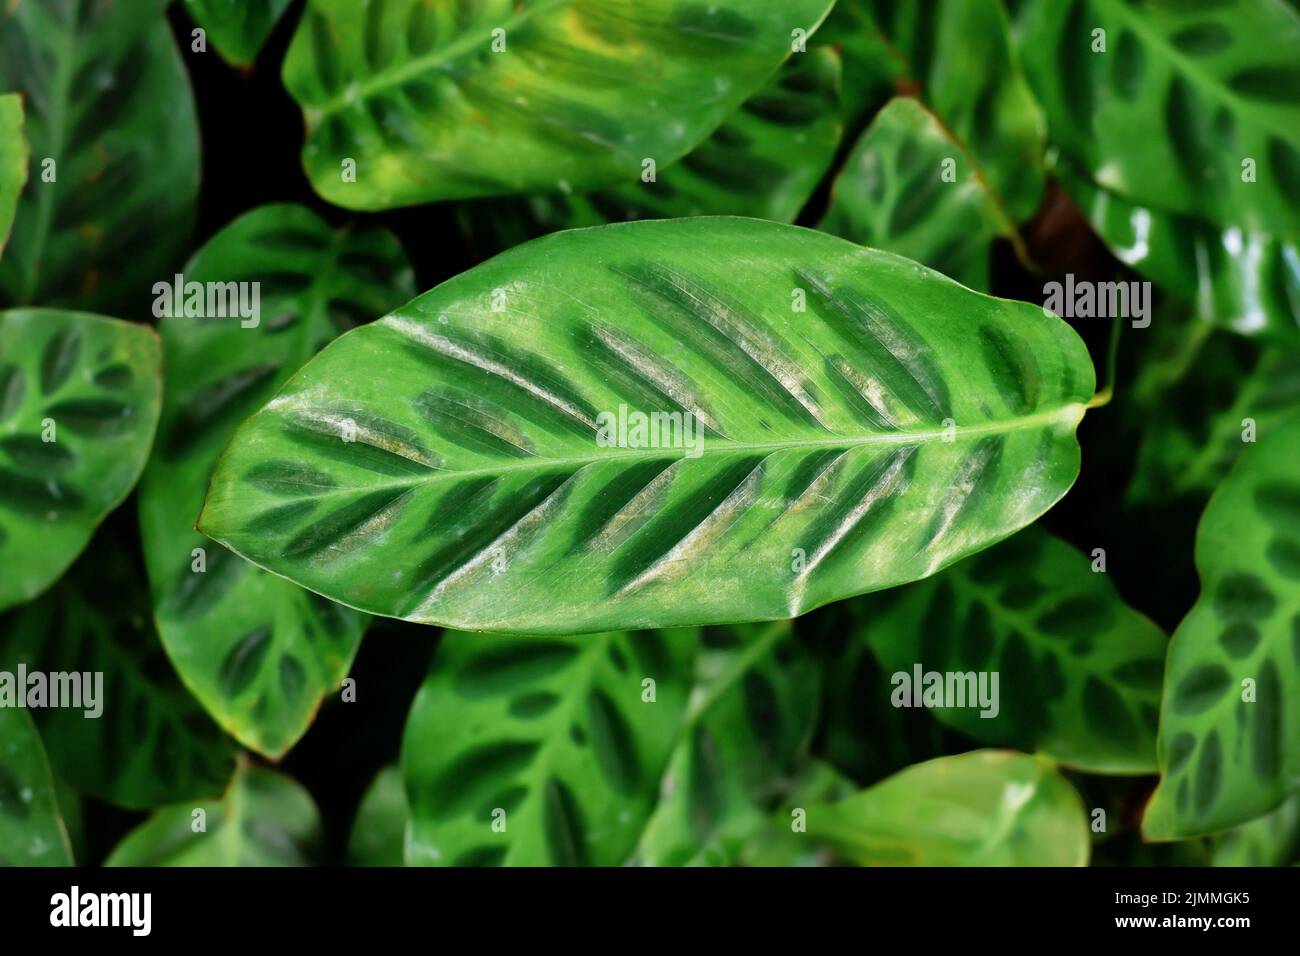 Pianta esotica 'Calathea Wiotii' con motivo a strisce verdi multicolore sulle foglie Foto Stock